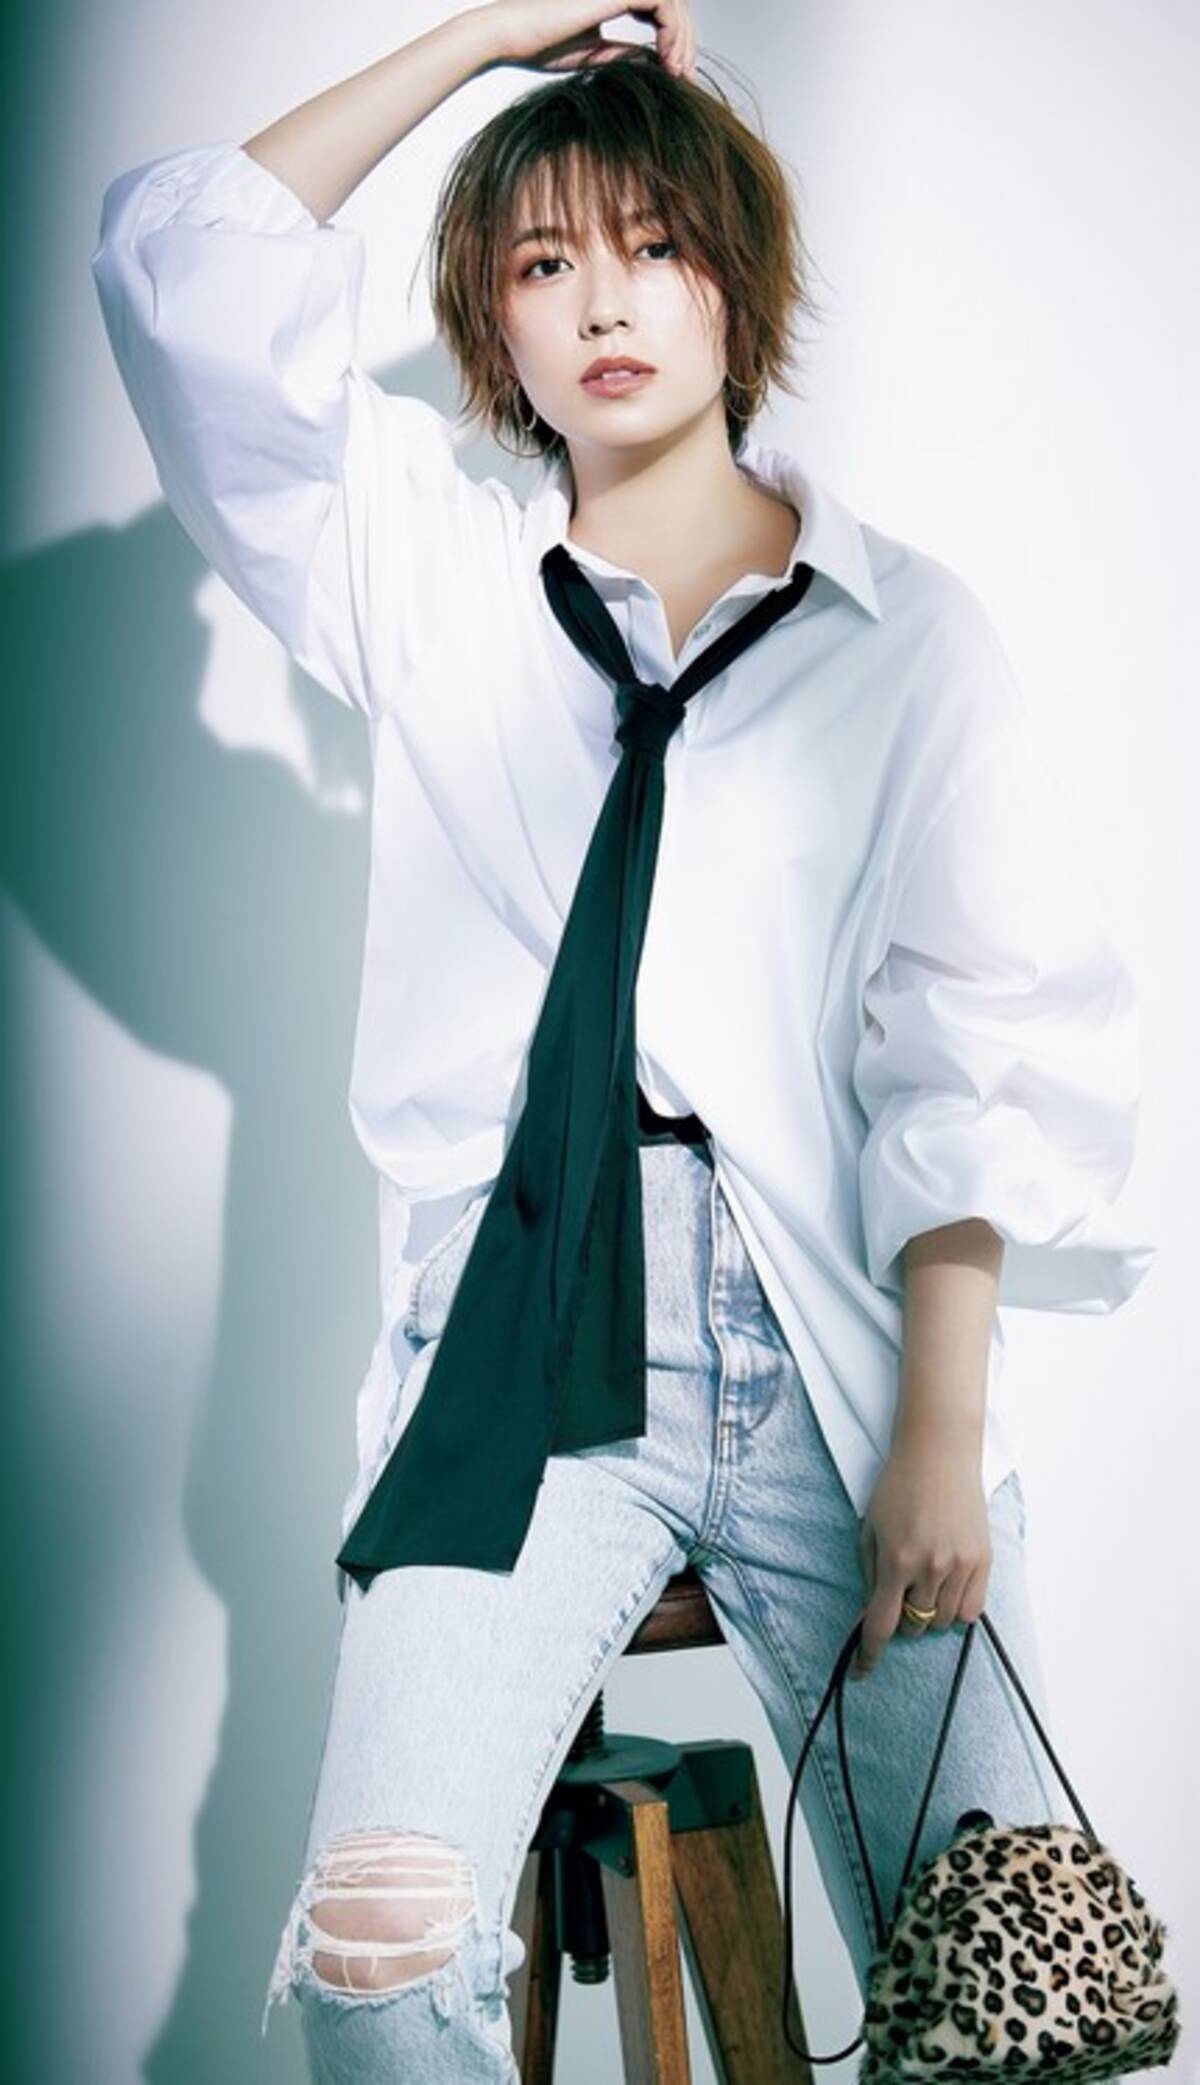 人気お天気キャスター 阿部華也子が ファッション誌でハンサム大変身 人生初のオールバックも 21年9月23日 エキサイトニュース